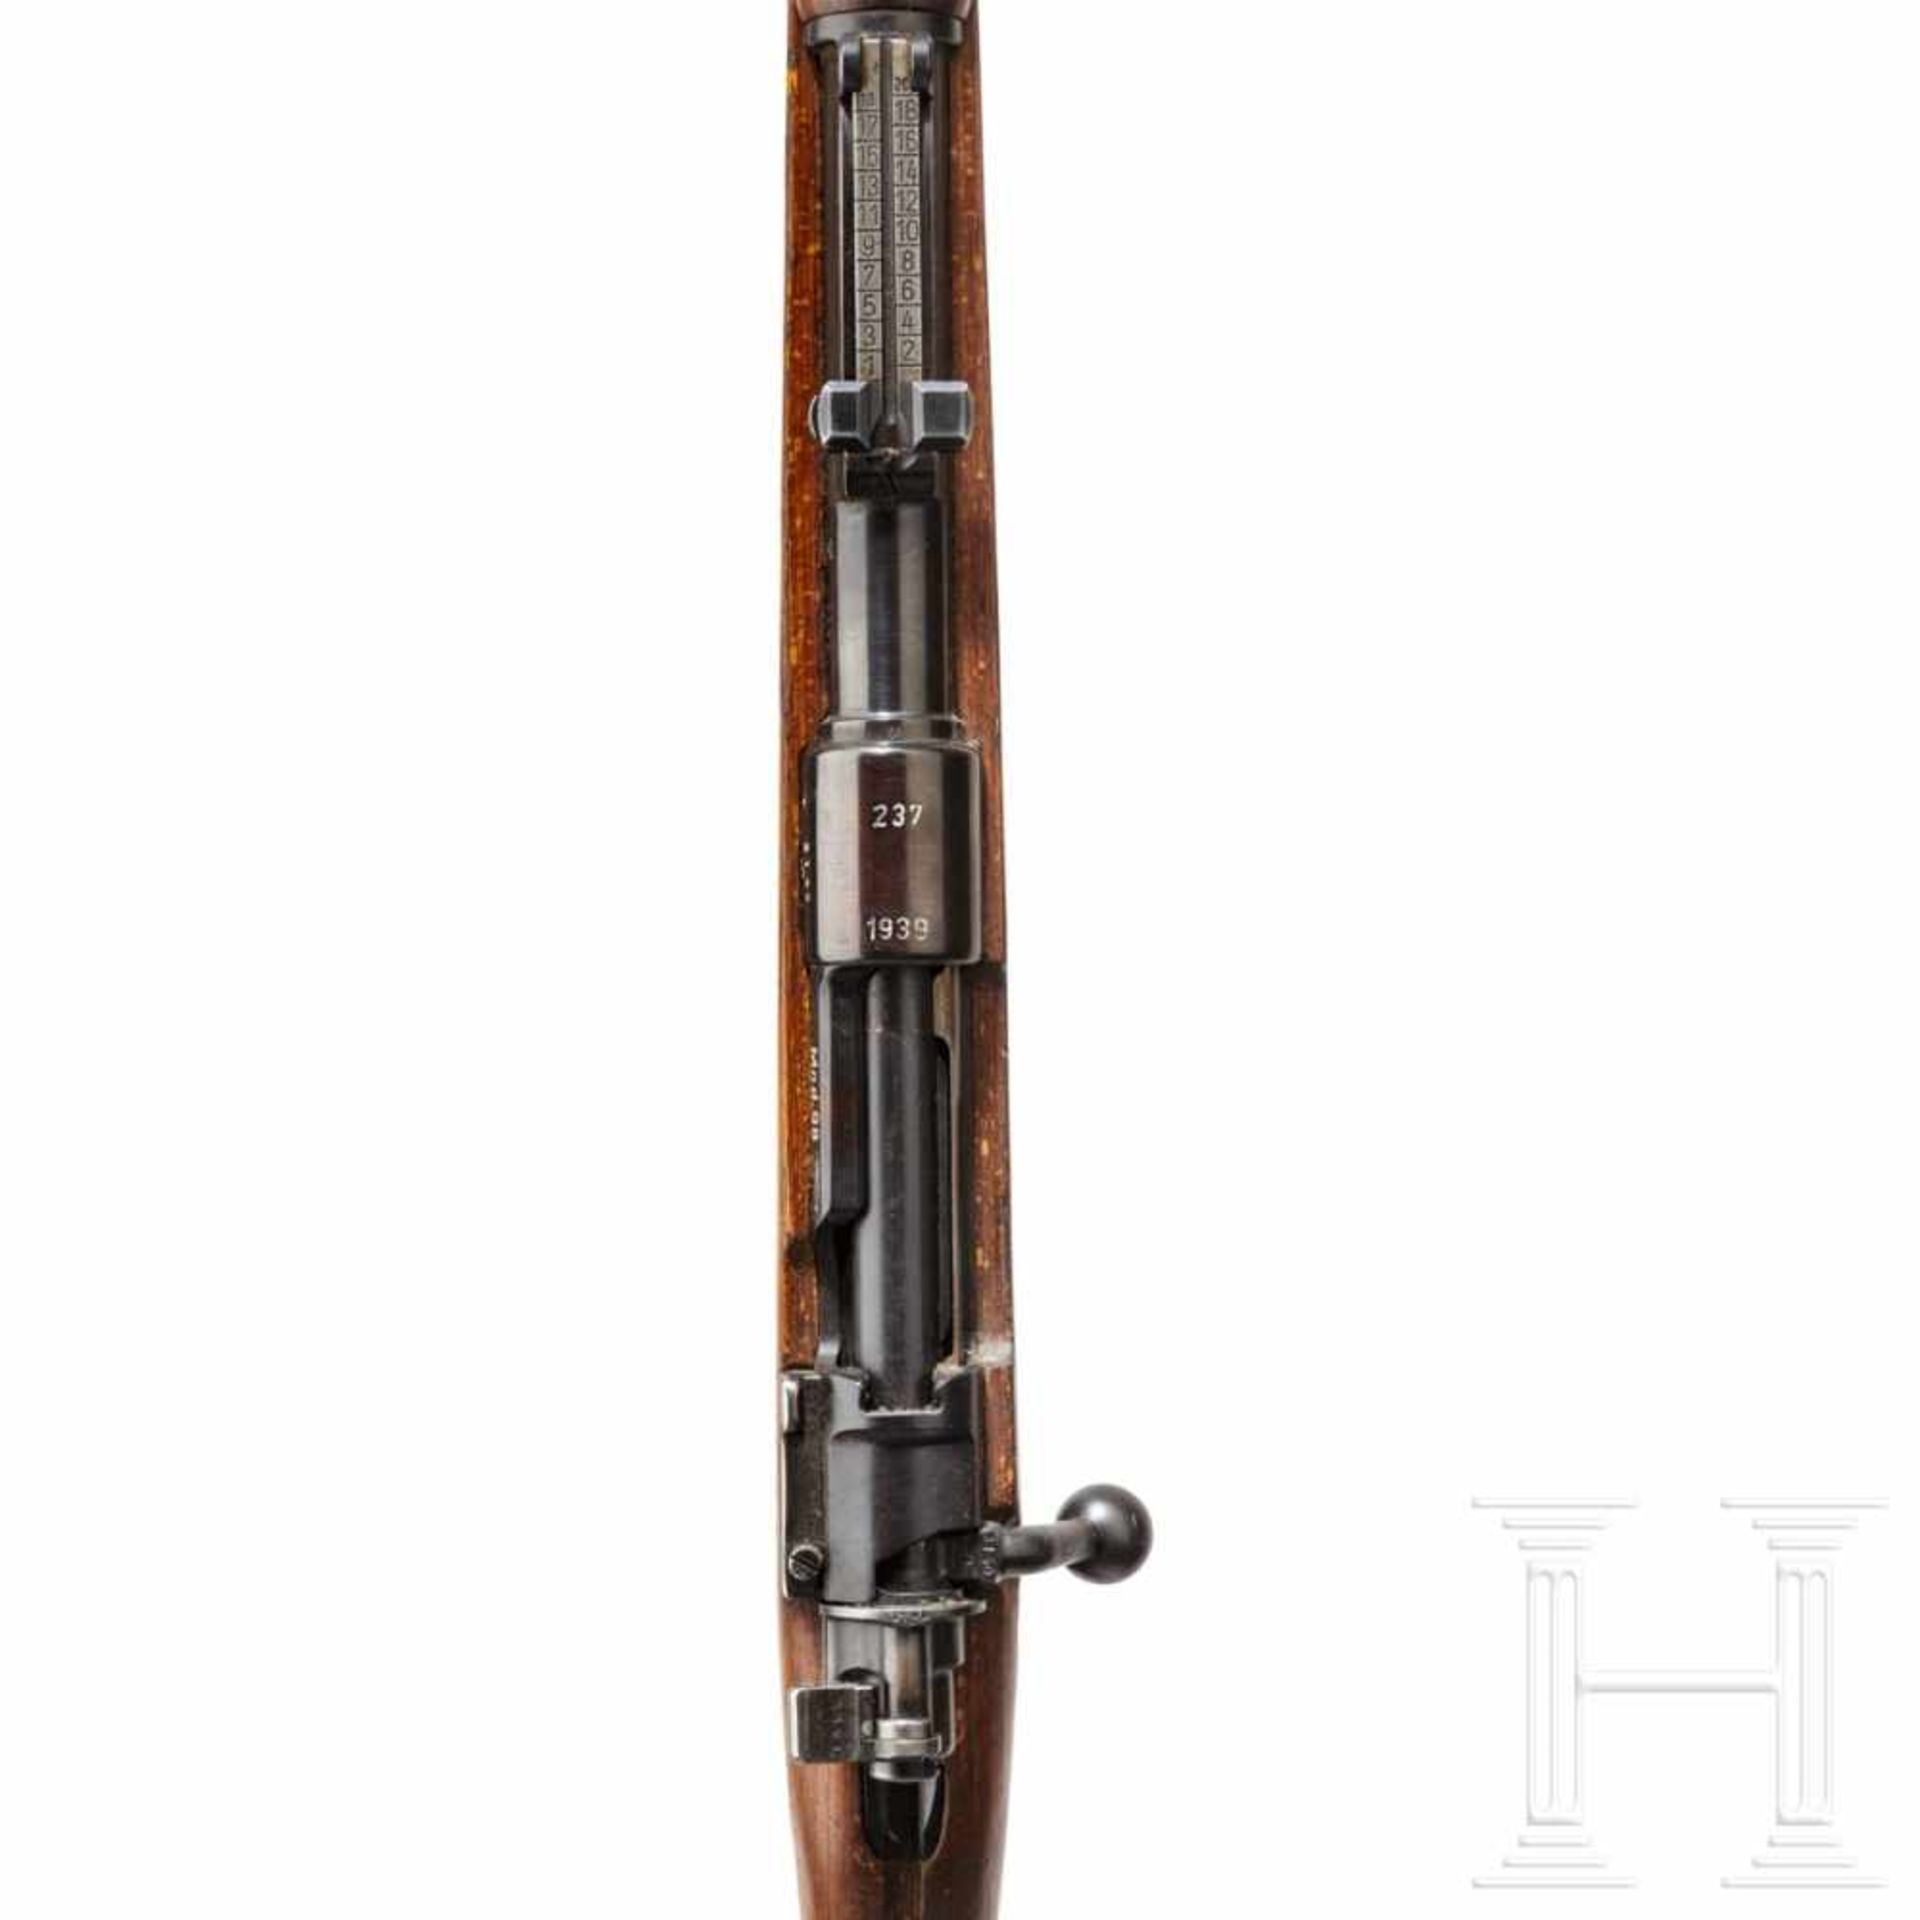 A carbine 98 k, code "237 -1939"Kal. 8x57 IS, Nr. 3140c, nummerngleich. Blanker Lauf. - Bild 3 aus 3